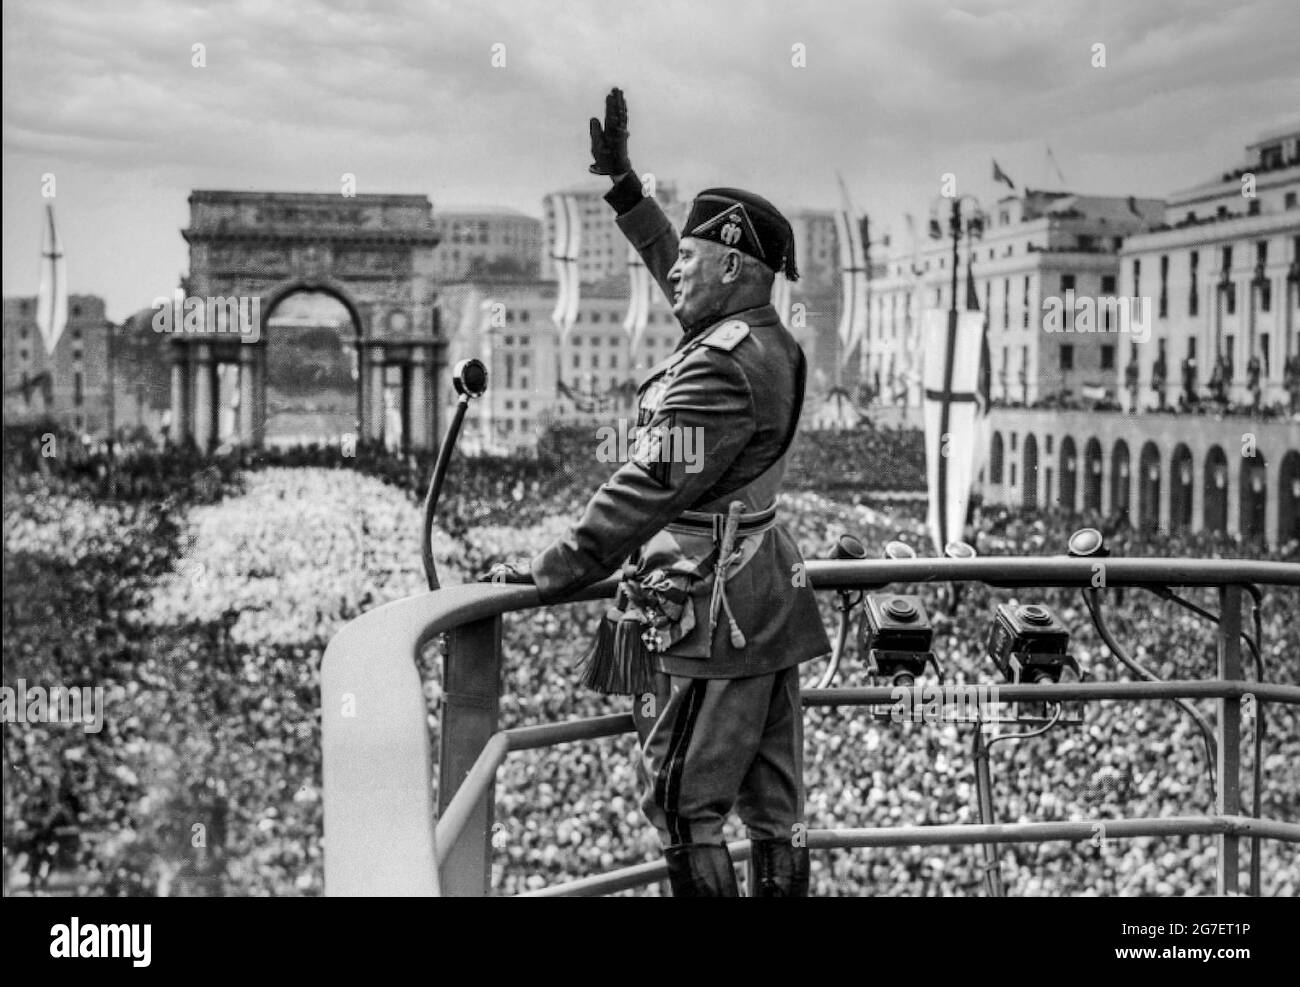 MUSSOLINI REDE 1930er IL DULCE ROM ITALIEN REDE FACIST GRÜSST DEN italienischen faschistischen Diktator Benito Mussolini auf dem Höhepunkt seiner Popularität, in Militäruniform mit Mikrofon hält eine Rede auf dem erhöhten Podium, facist salute vor ekstatischen italienischen Massen in Rom Italien in den 1930er Jahren Stockfoto